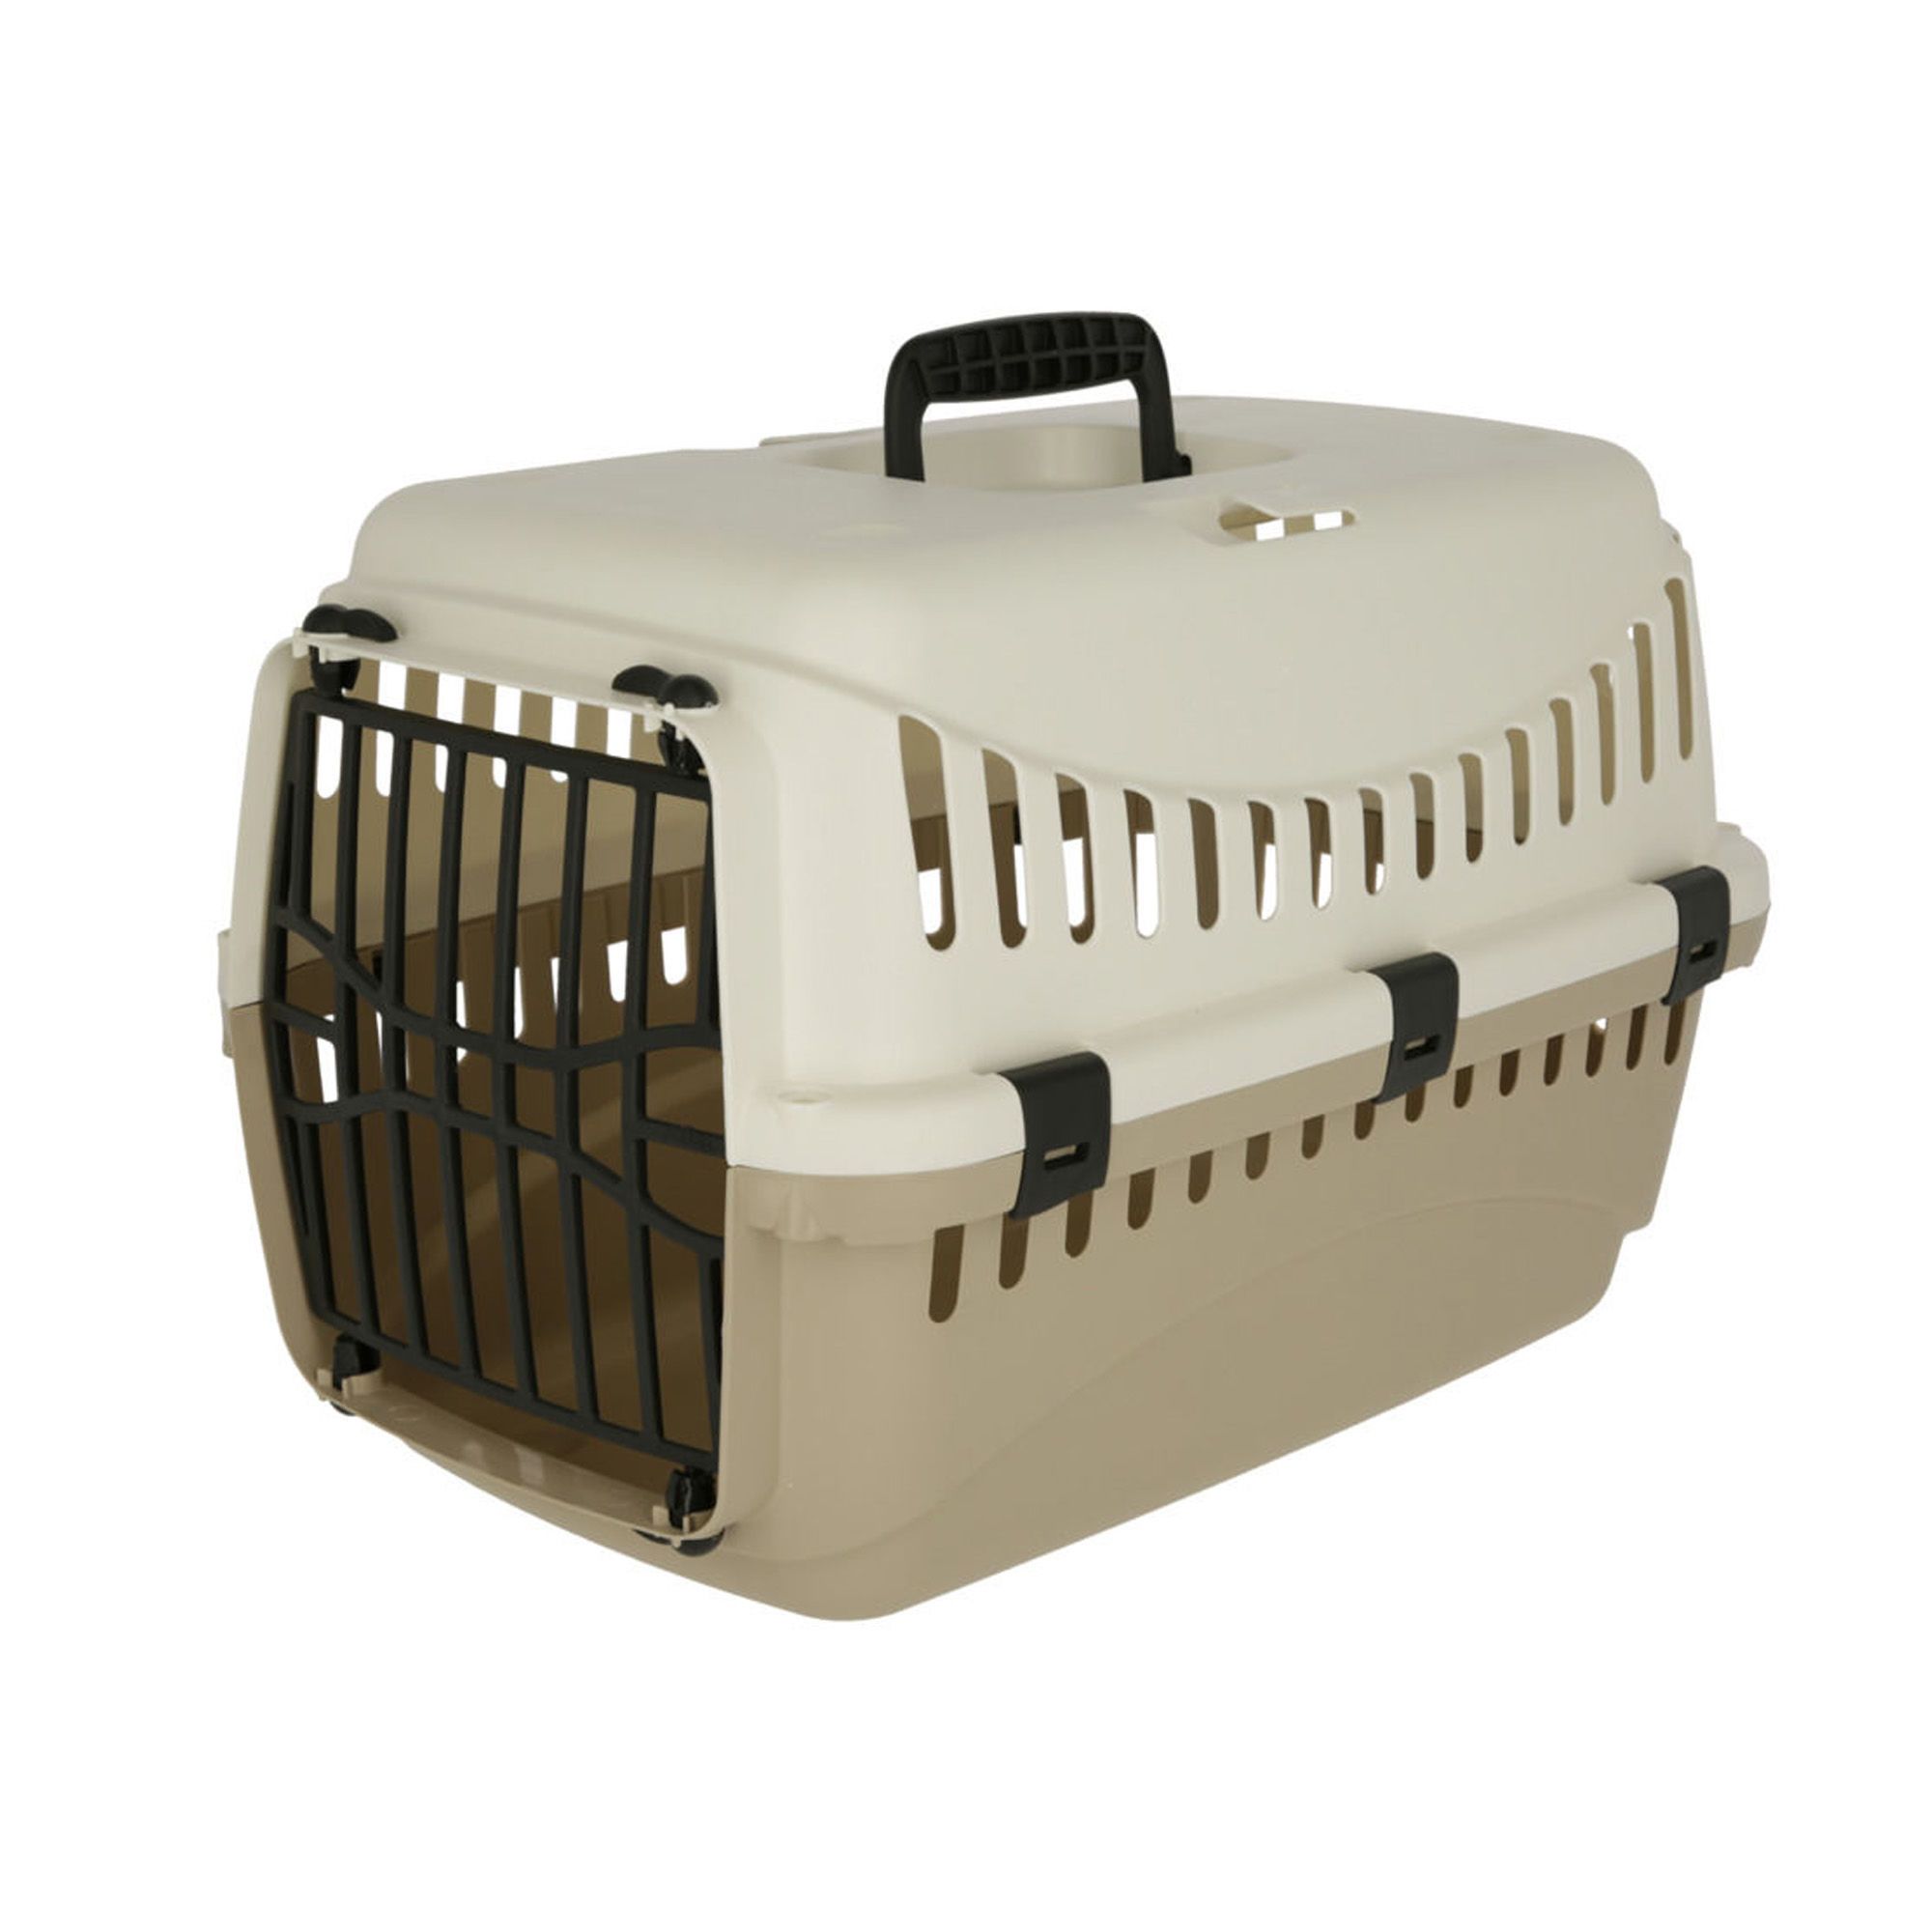 Neuf* Grande cage pour chien avec housse et coussin, Accessoires, Ville  de Québec